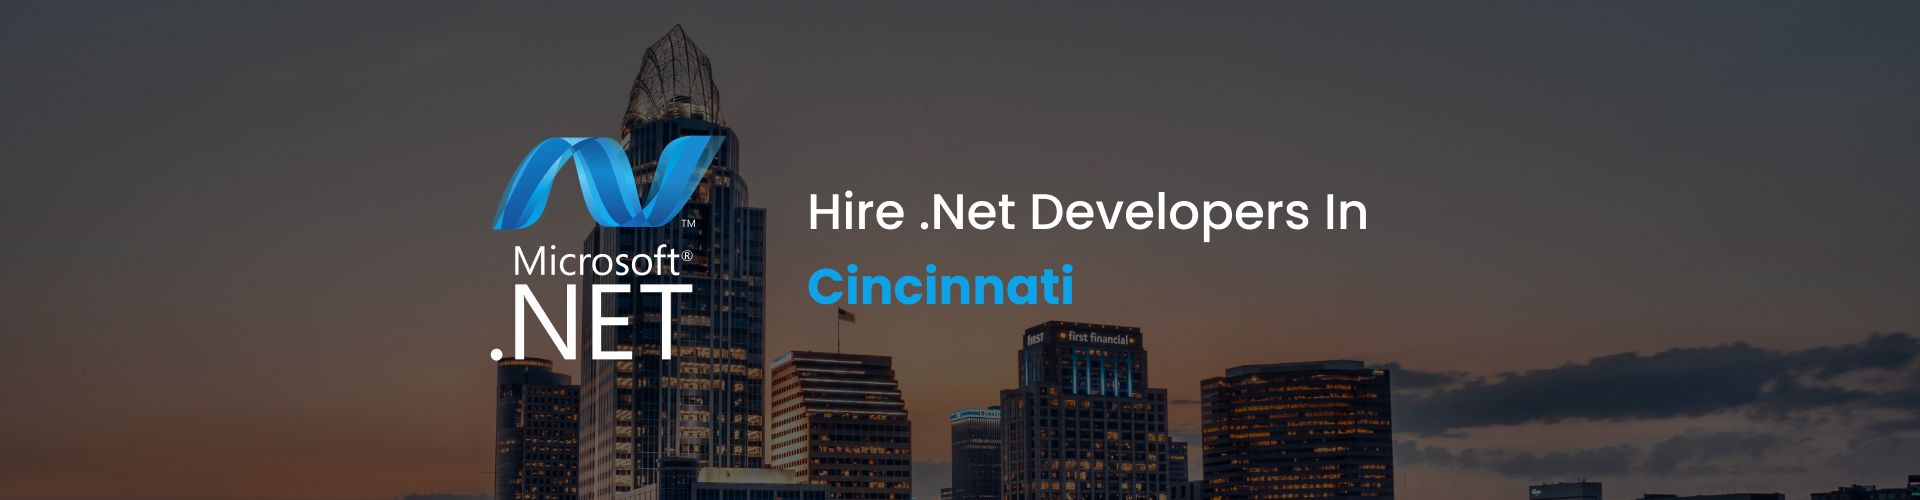 hire .net developers in cincinnati